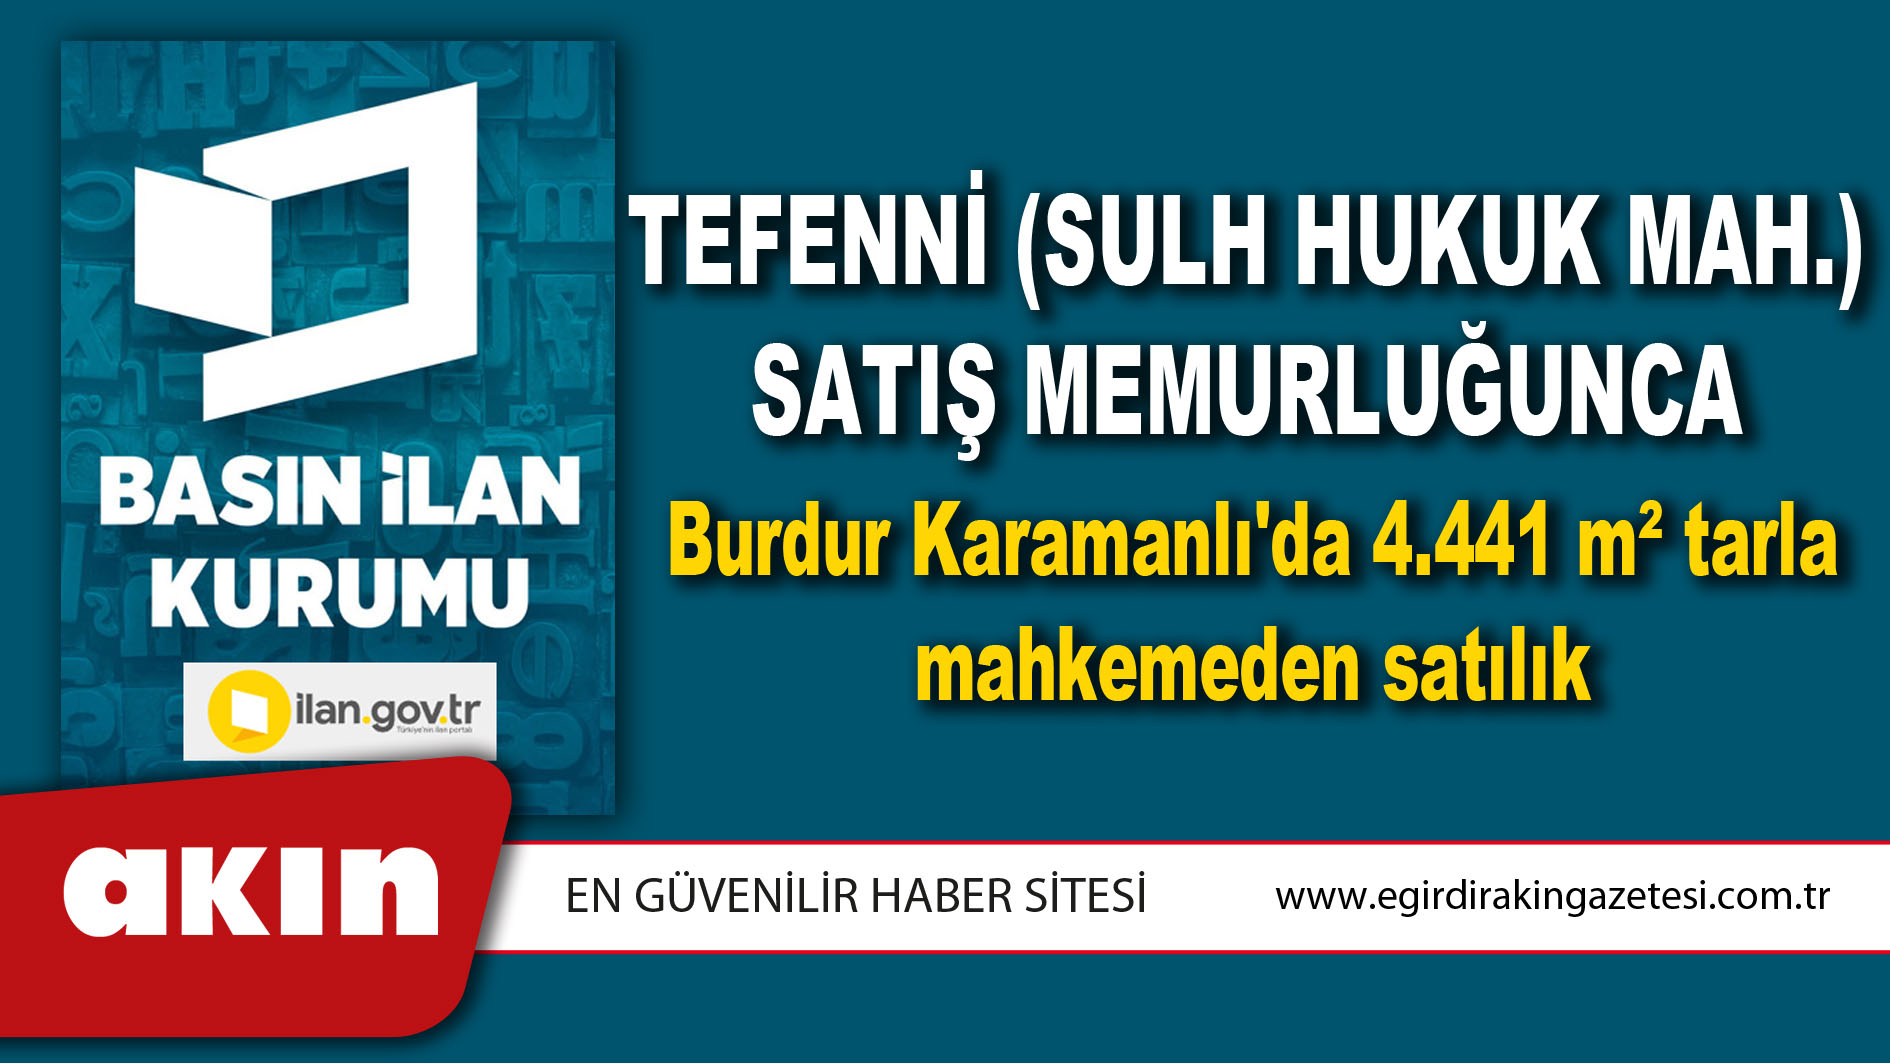 Tefenni (Sulh Hukuk Mah.) Satış Memurluğunca Burdur Karamanlı'da 4.441 m² tarla mahkemeden satılık